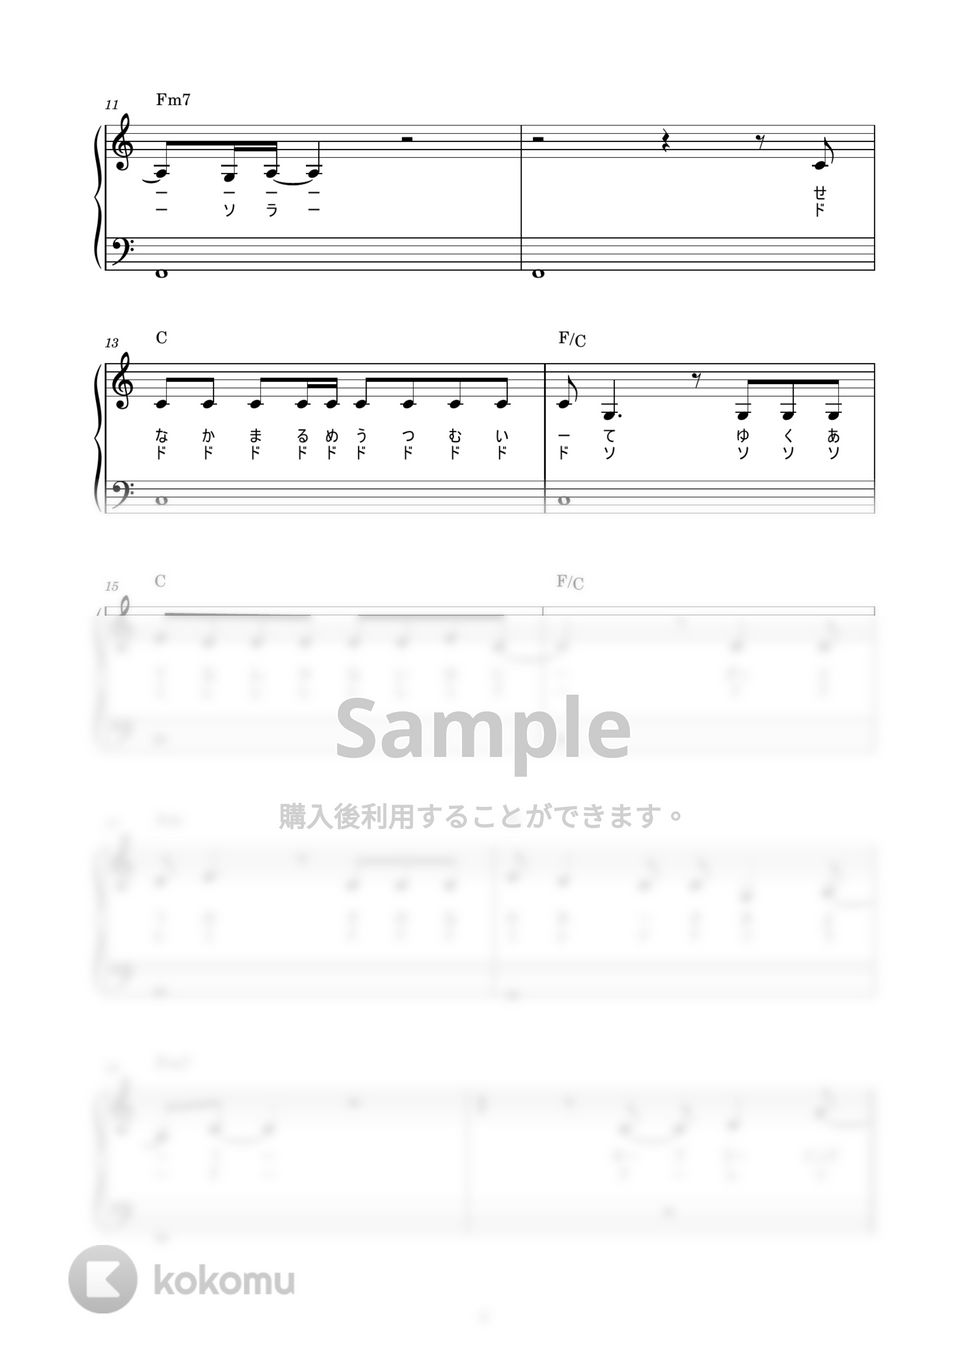 乃木坂46 - シンクロニシティ (かんたん / 歌詞付き / ドレミ付き / 初心者) by piano.tokyo